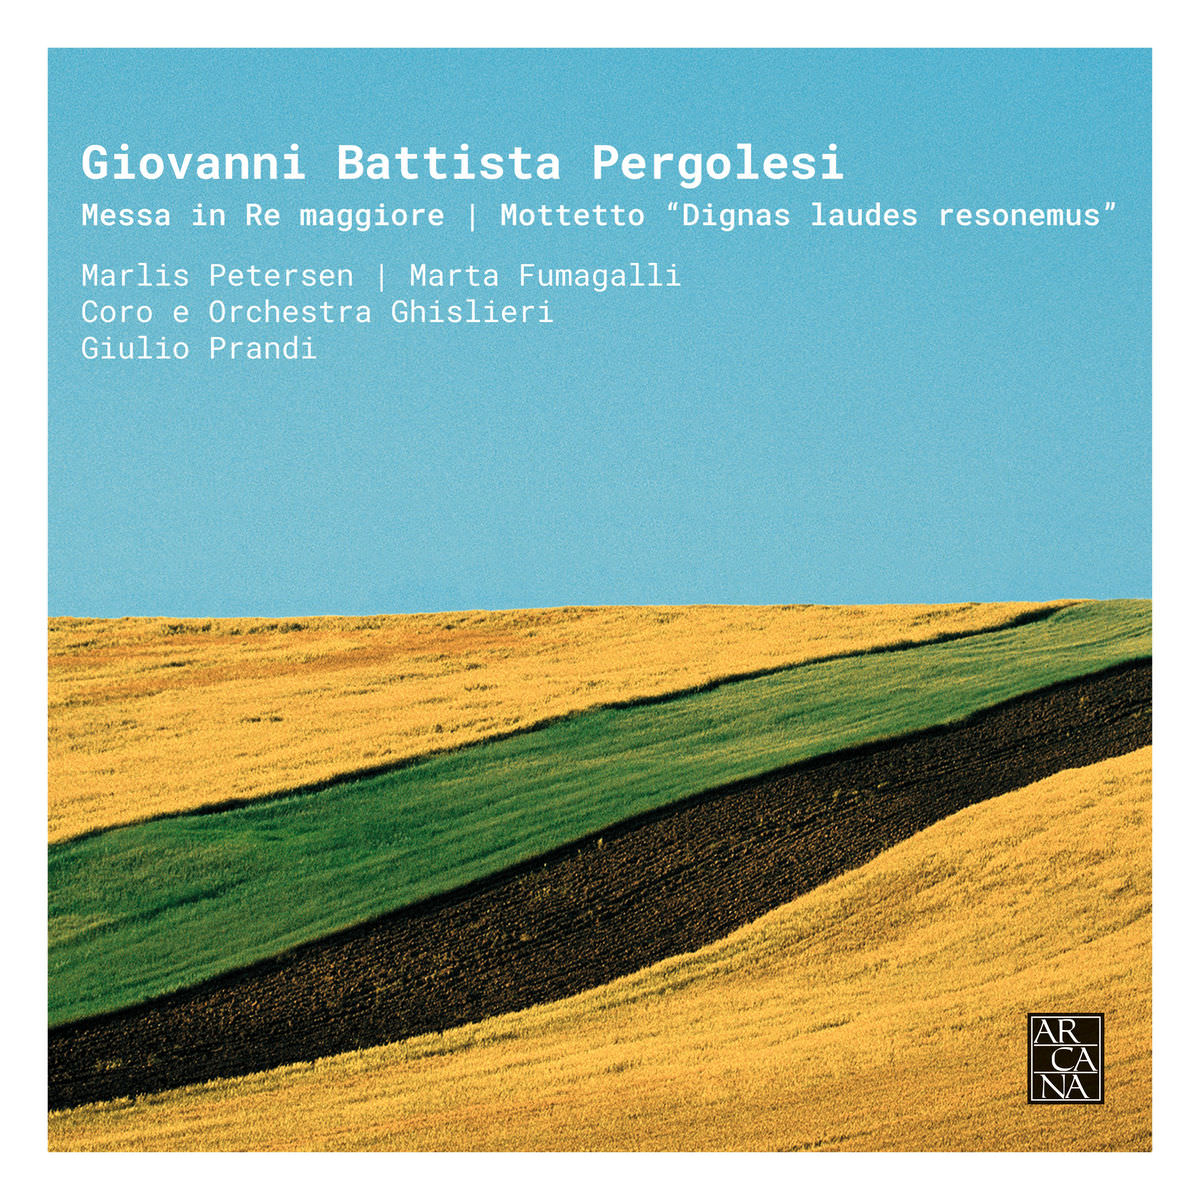 Ghislieri Consort, Ghislieri Choir – Pergolesi: Messa in Re Maggiore & Mottetto “Dignas laudes resonemus” (2018) [FLAC 24bit/88,2kHz]